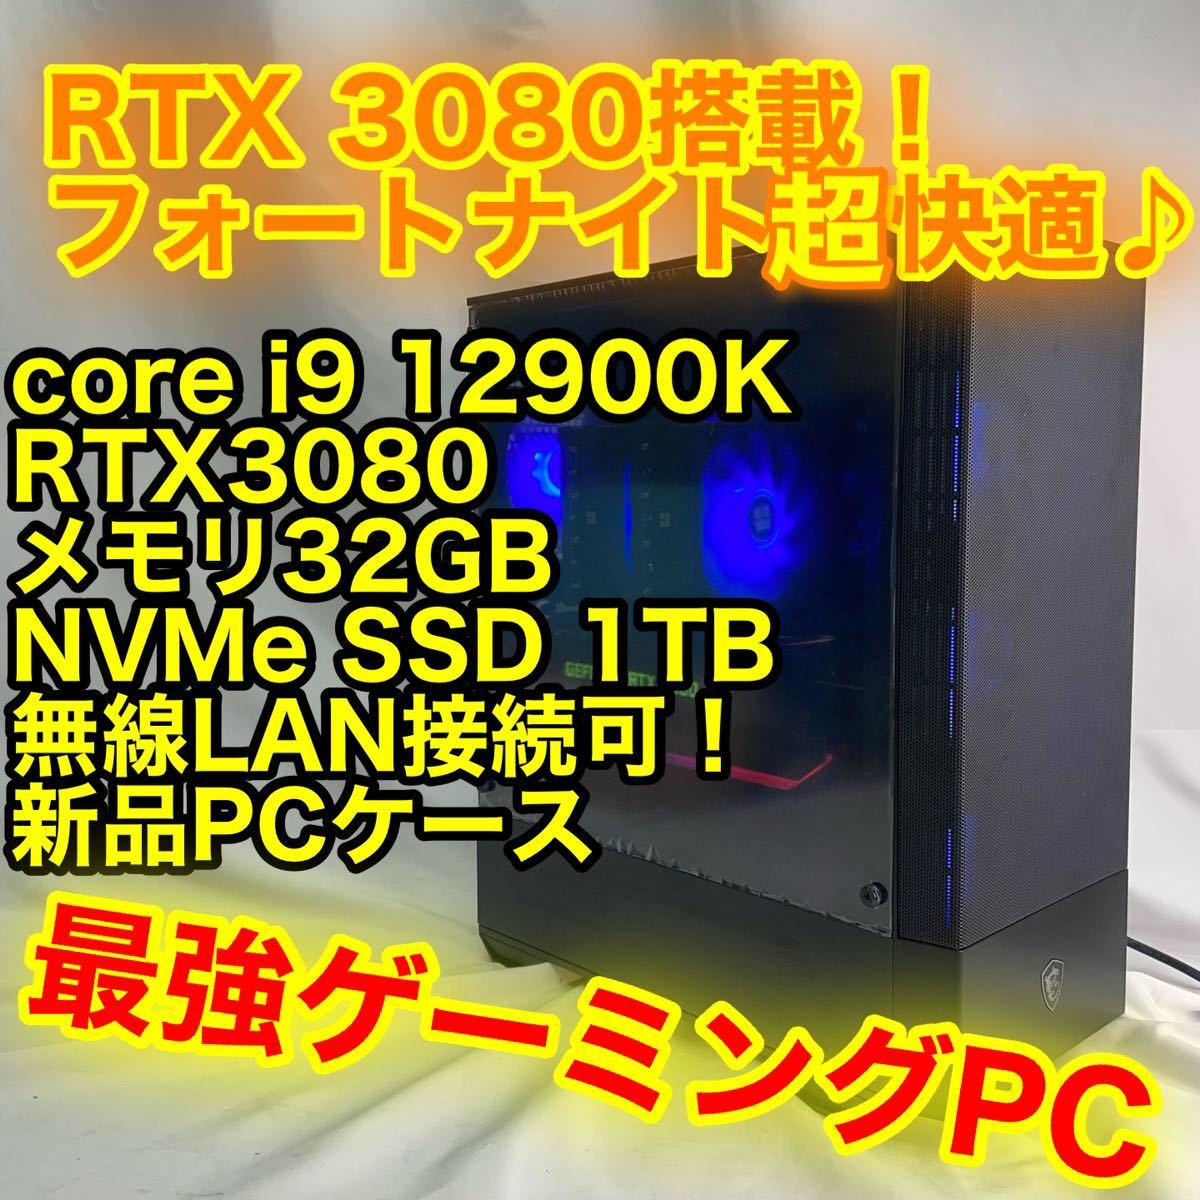 インテル Core i9 12900 BOX オークション比較 - 価格.com